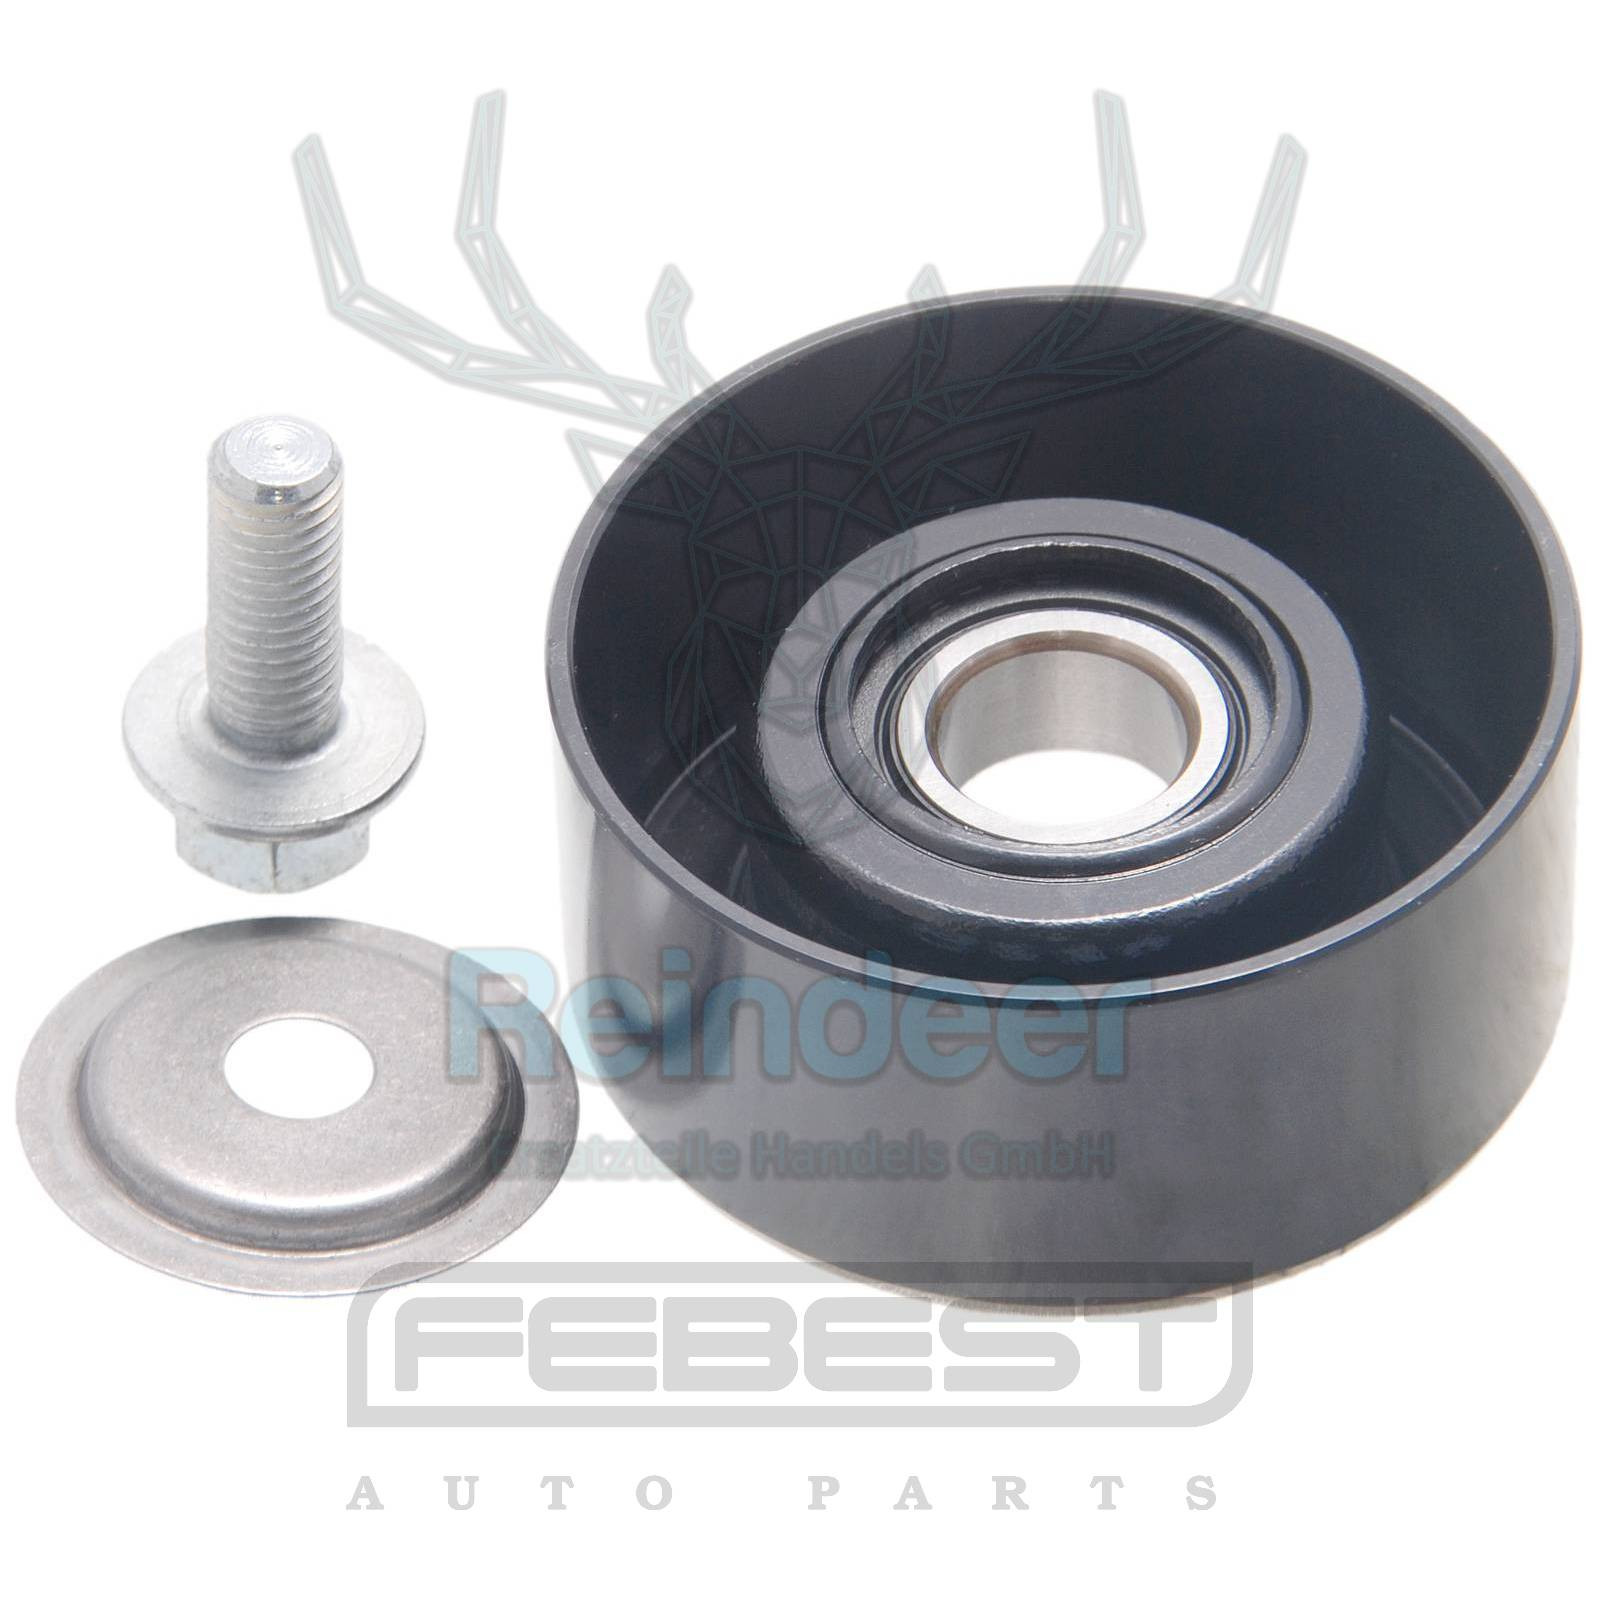 Tensioner pulley - repair kit 0287-r51md For Nissan Pathfinder R51m 2005.01-2014.11 [El]